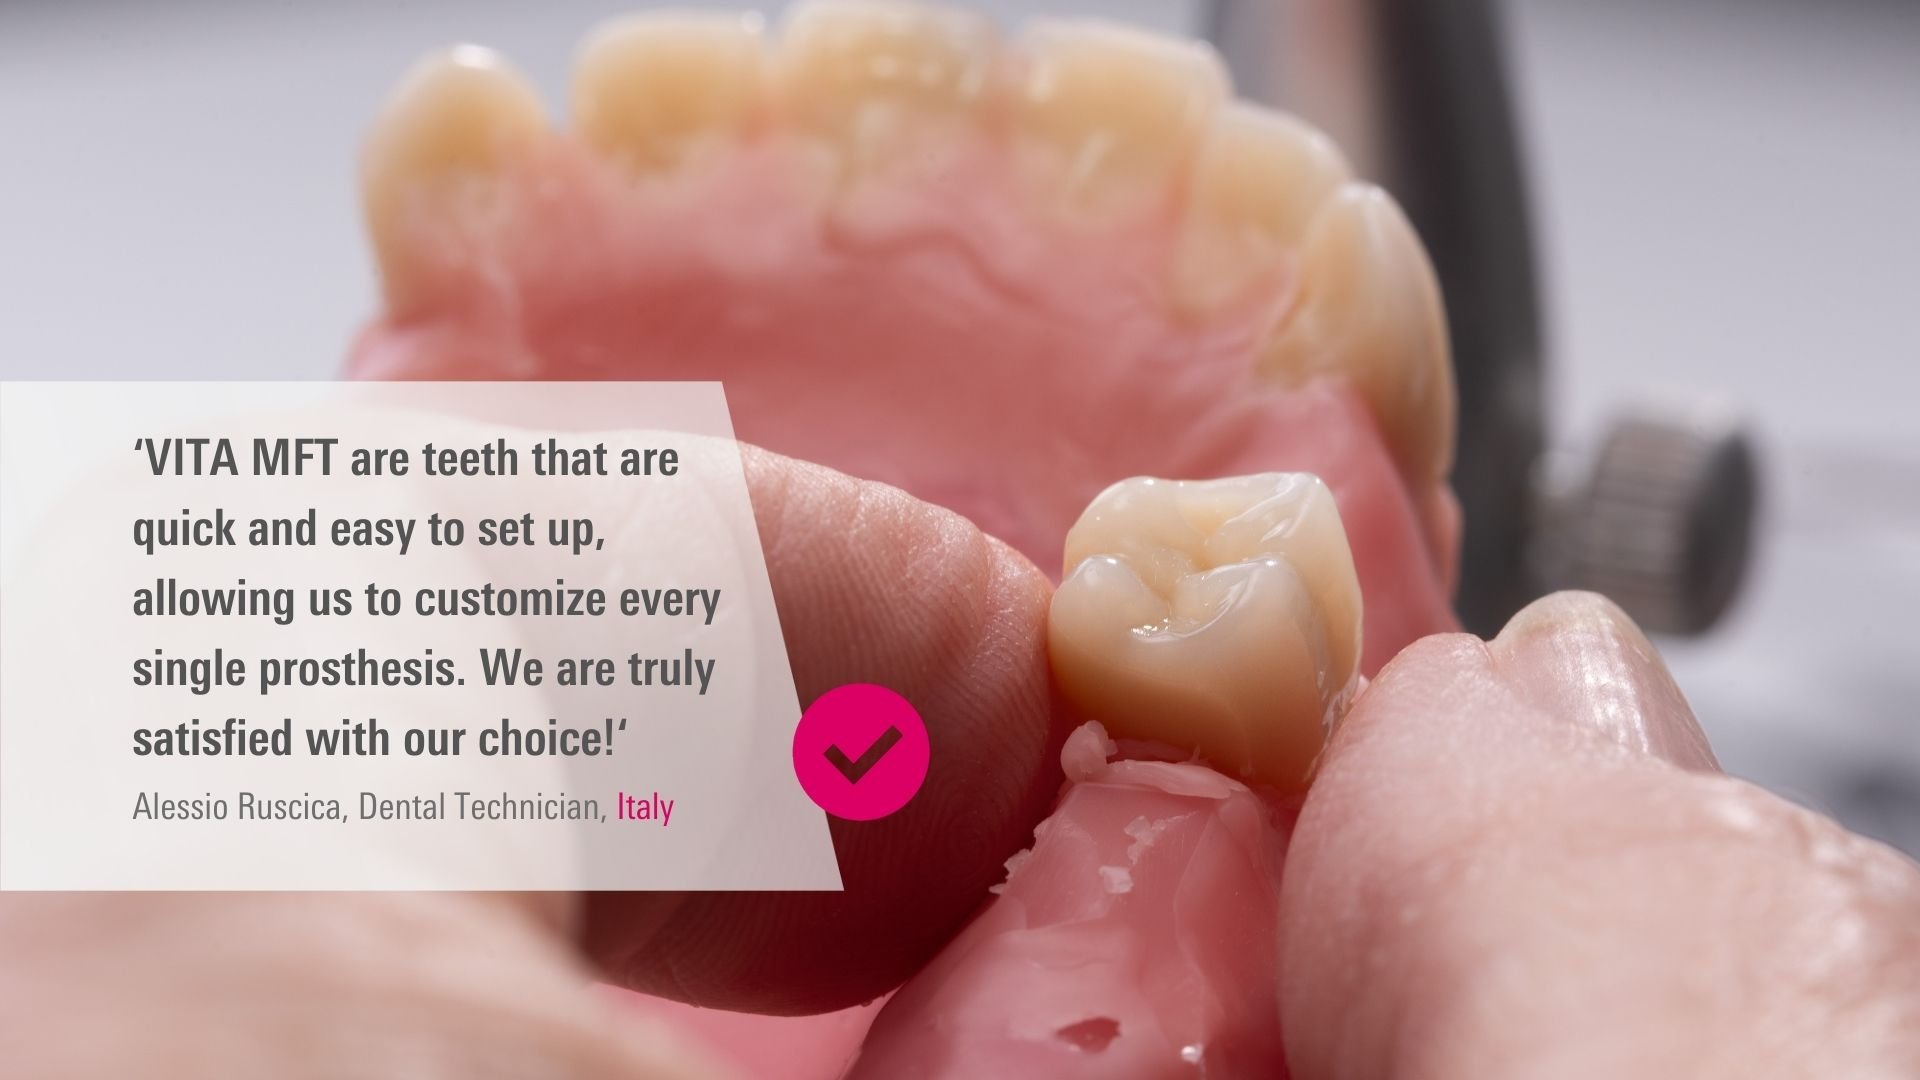 VITA MFT. Alessio Ruscica, Dental Technician, Italy